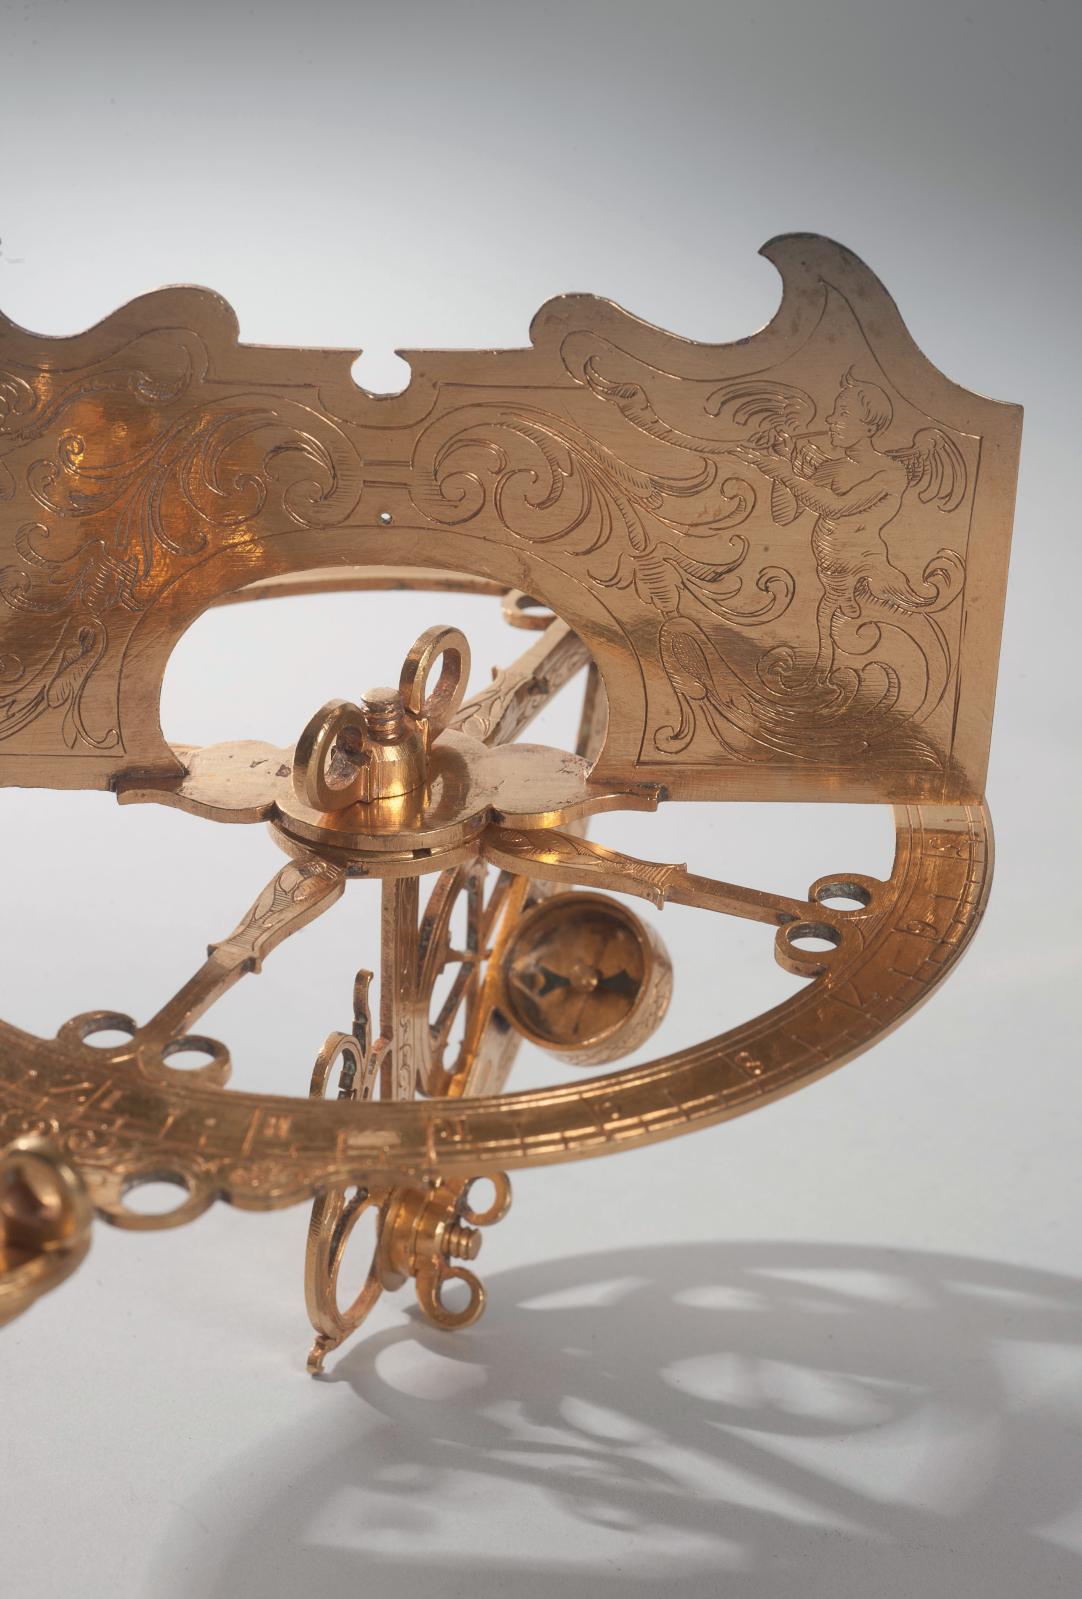 Instrument céleste à visée, cercle gradué et boussole amovible, démontable, probablement du XIXe siècle ; dans une boîte en bois recouverte de maroqui